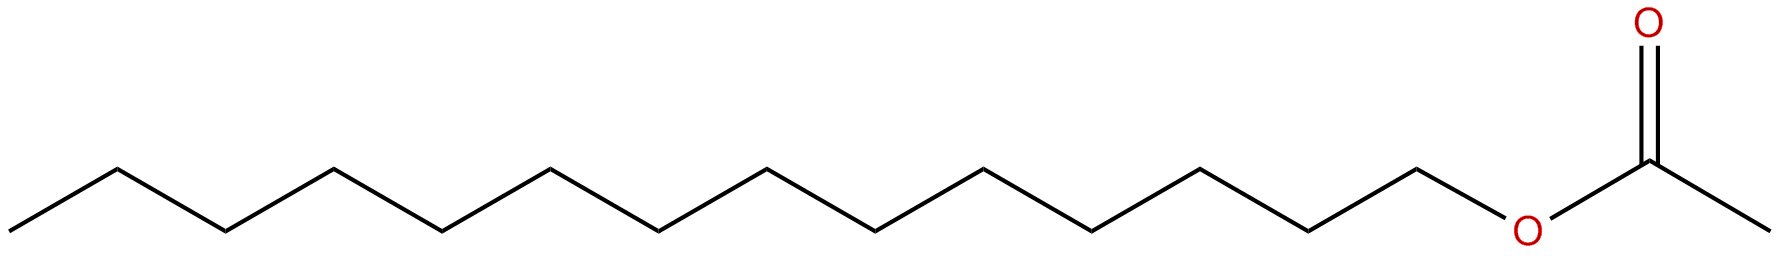 Image of tetradecyl ethanoate